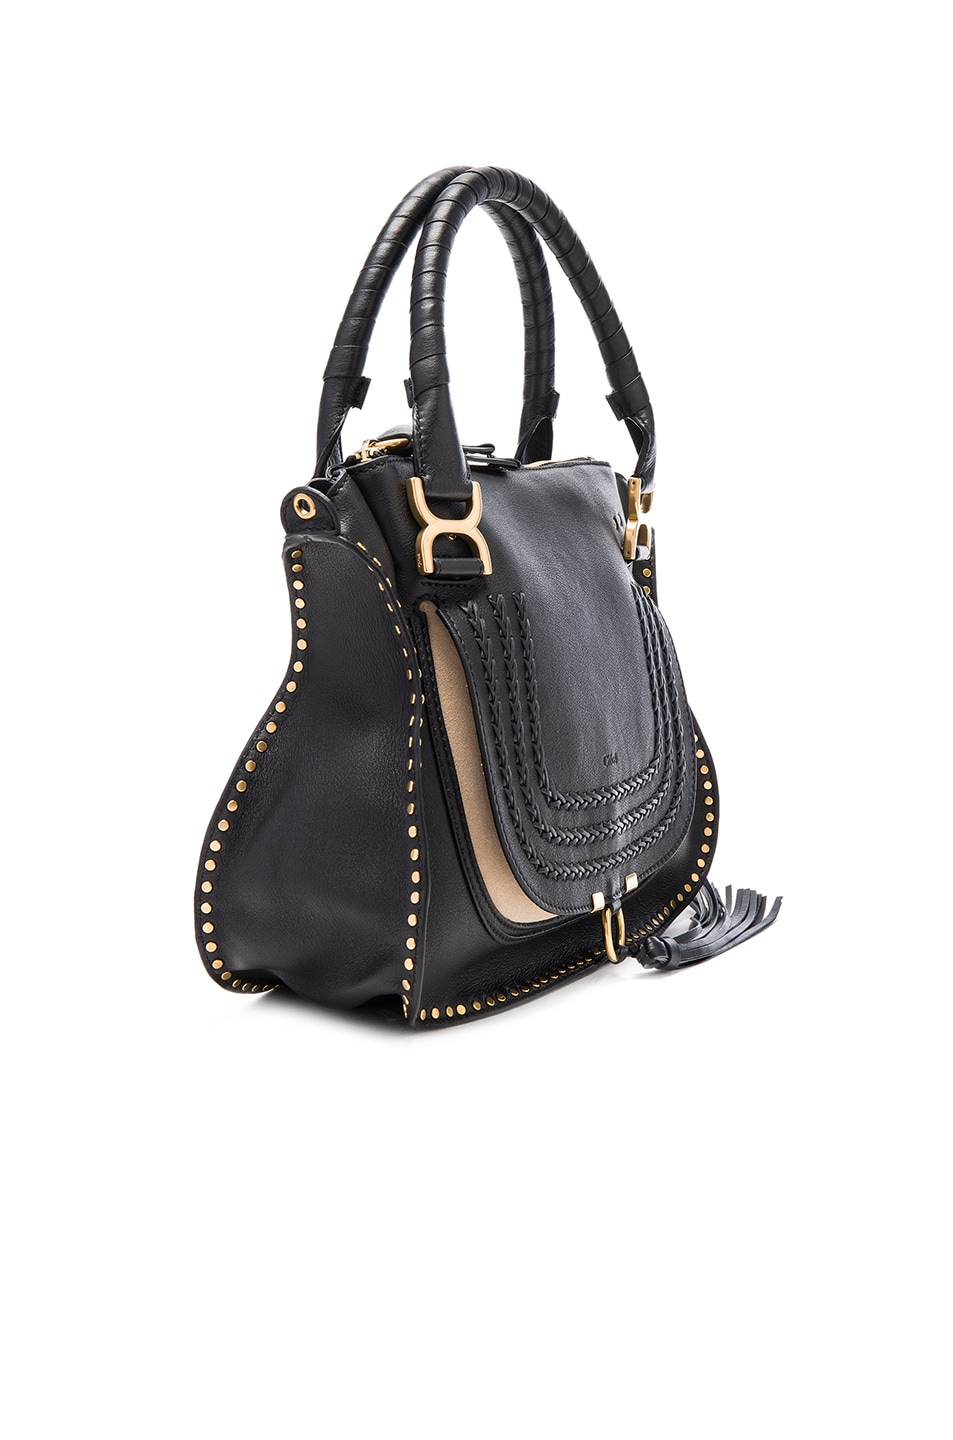 Chloe Medium Braided Leather Marci Bag in Black | FWRD